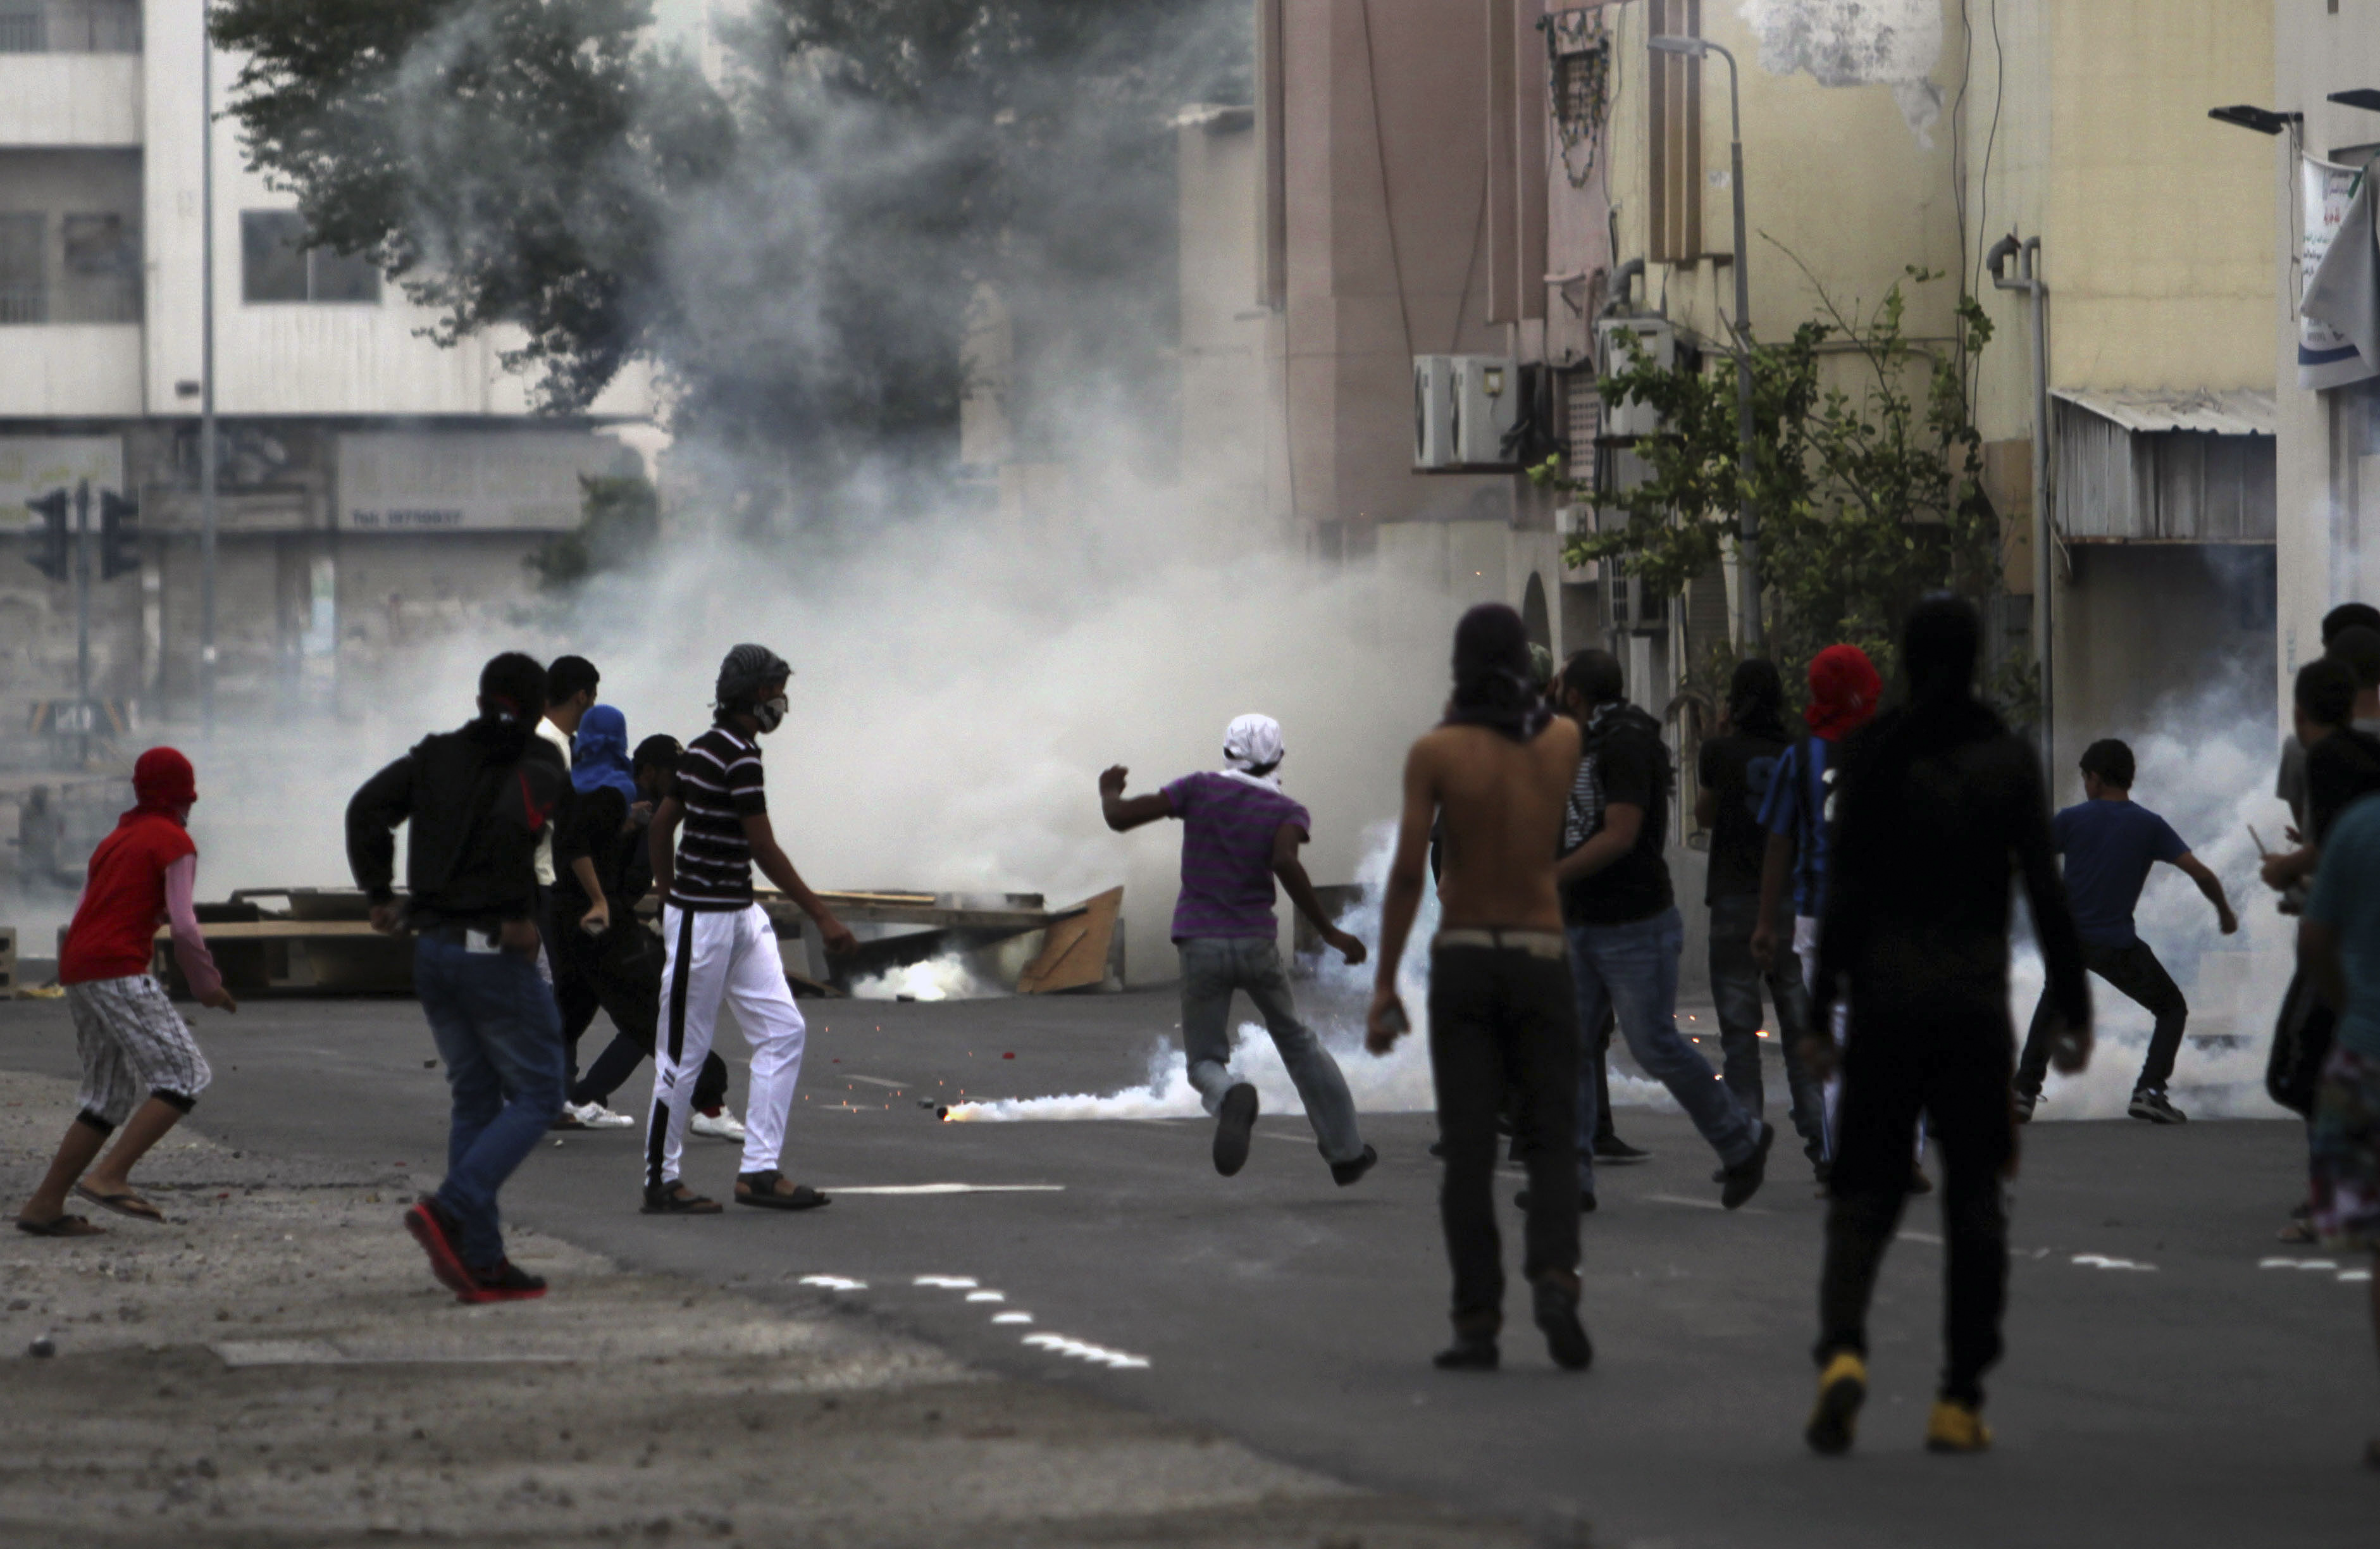 våld, Demonstration, Utredning, Rapport, Tortyr, Bahrain, Brott och straff